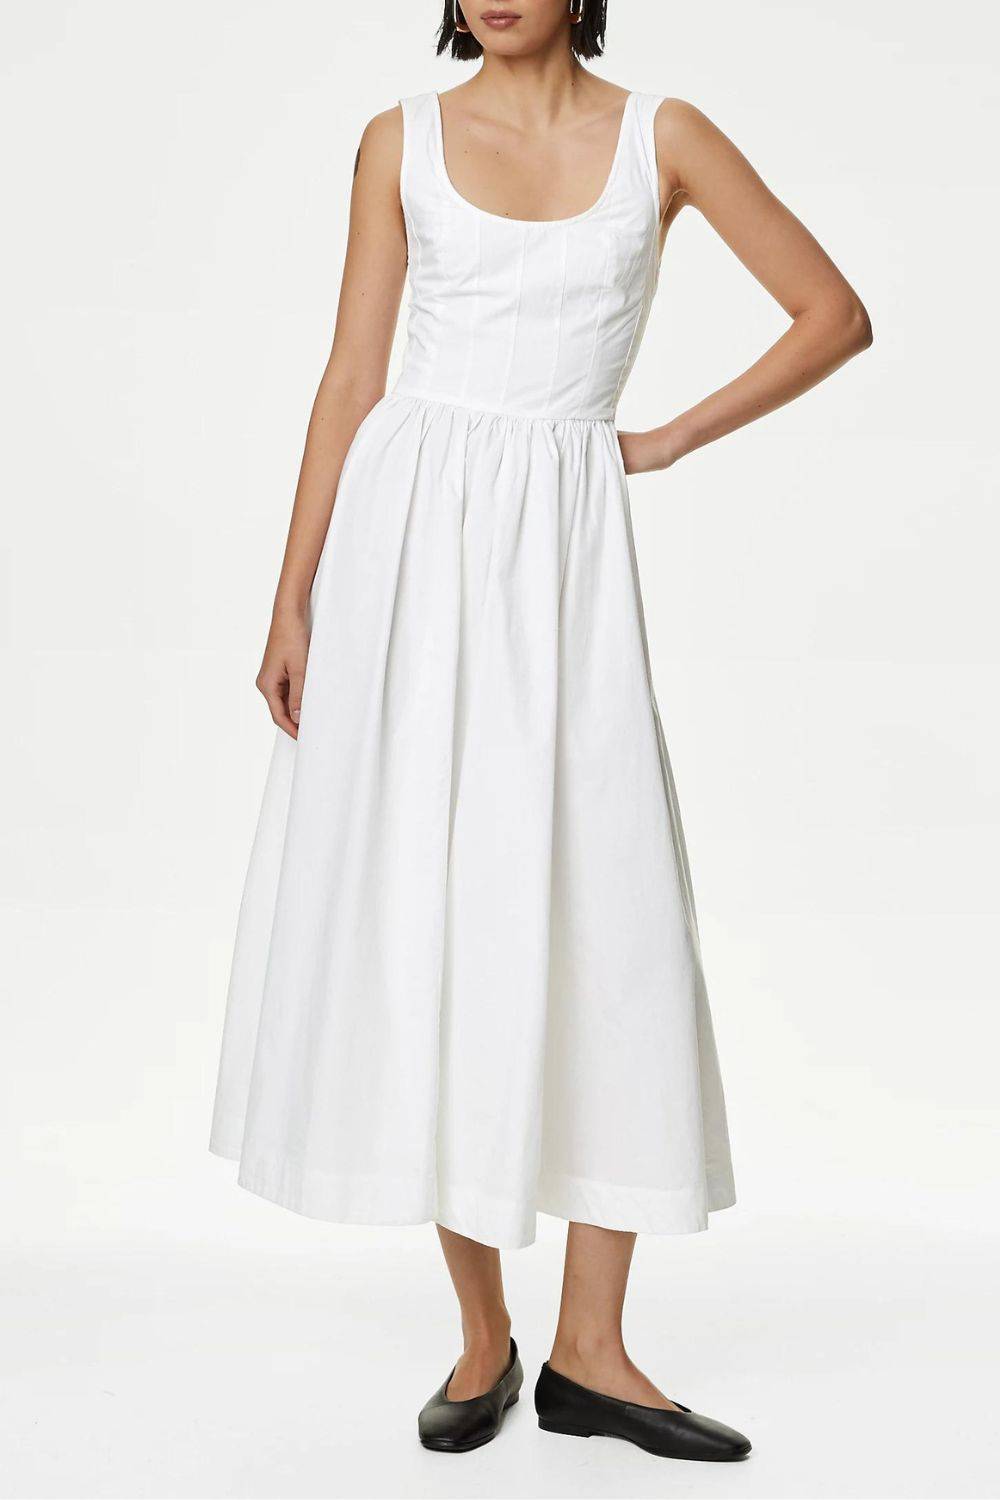 Biała sukienka minimalistyczna, Marks & Spencer, 230 zł (Fot. materiały prasowe)